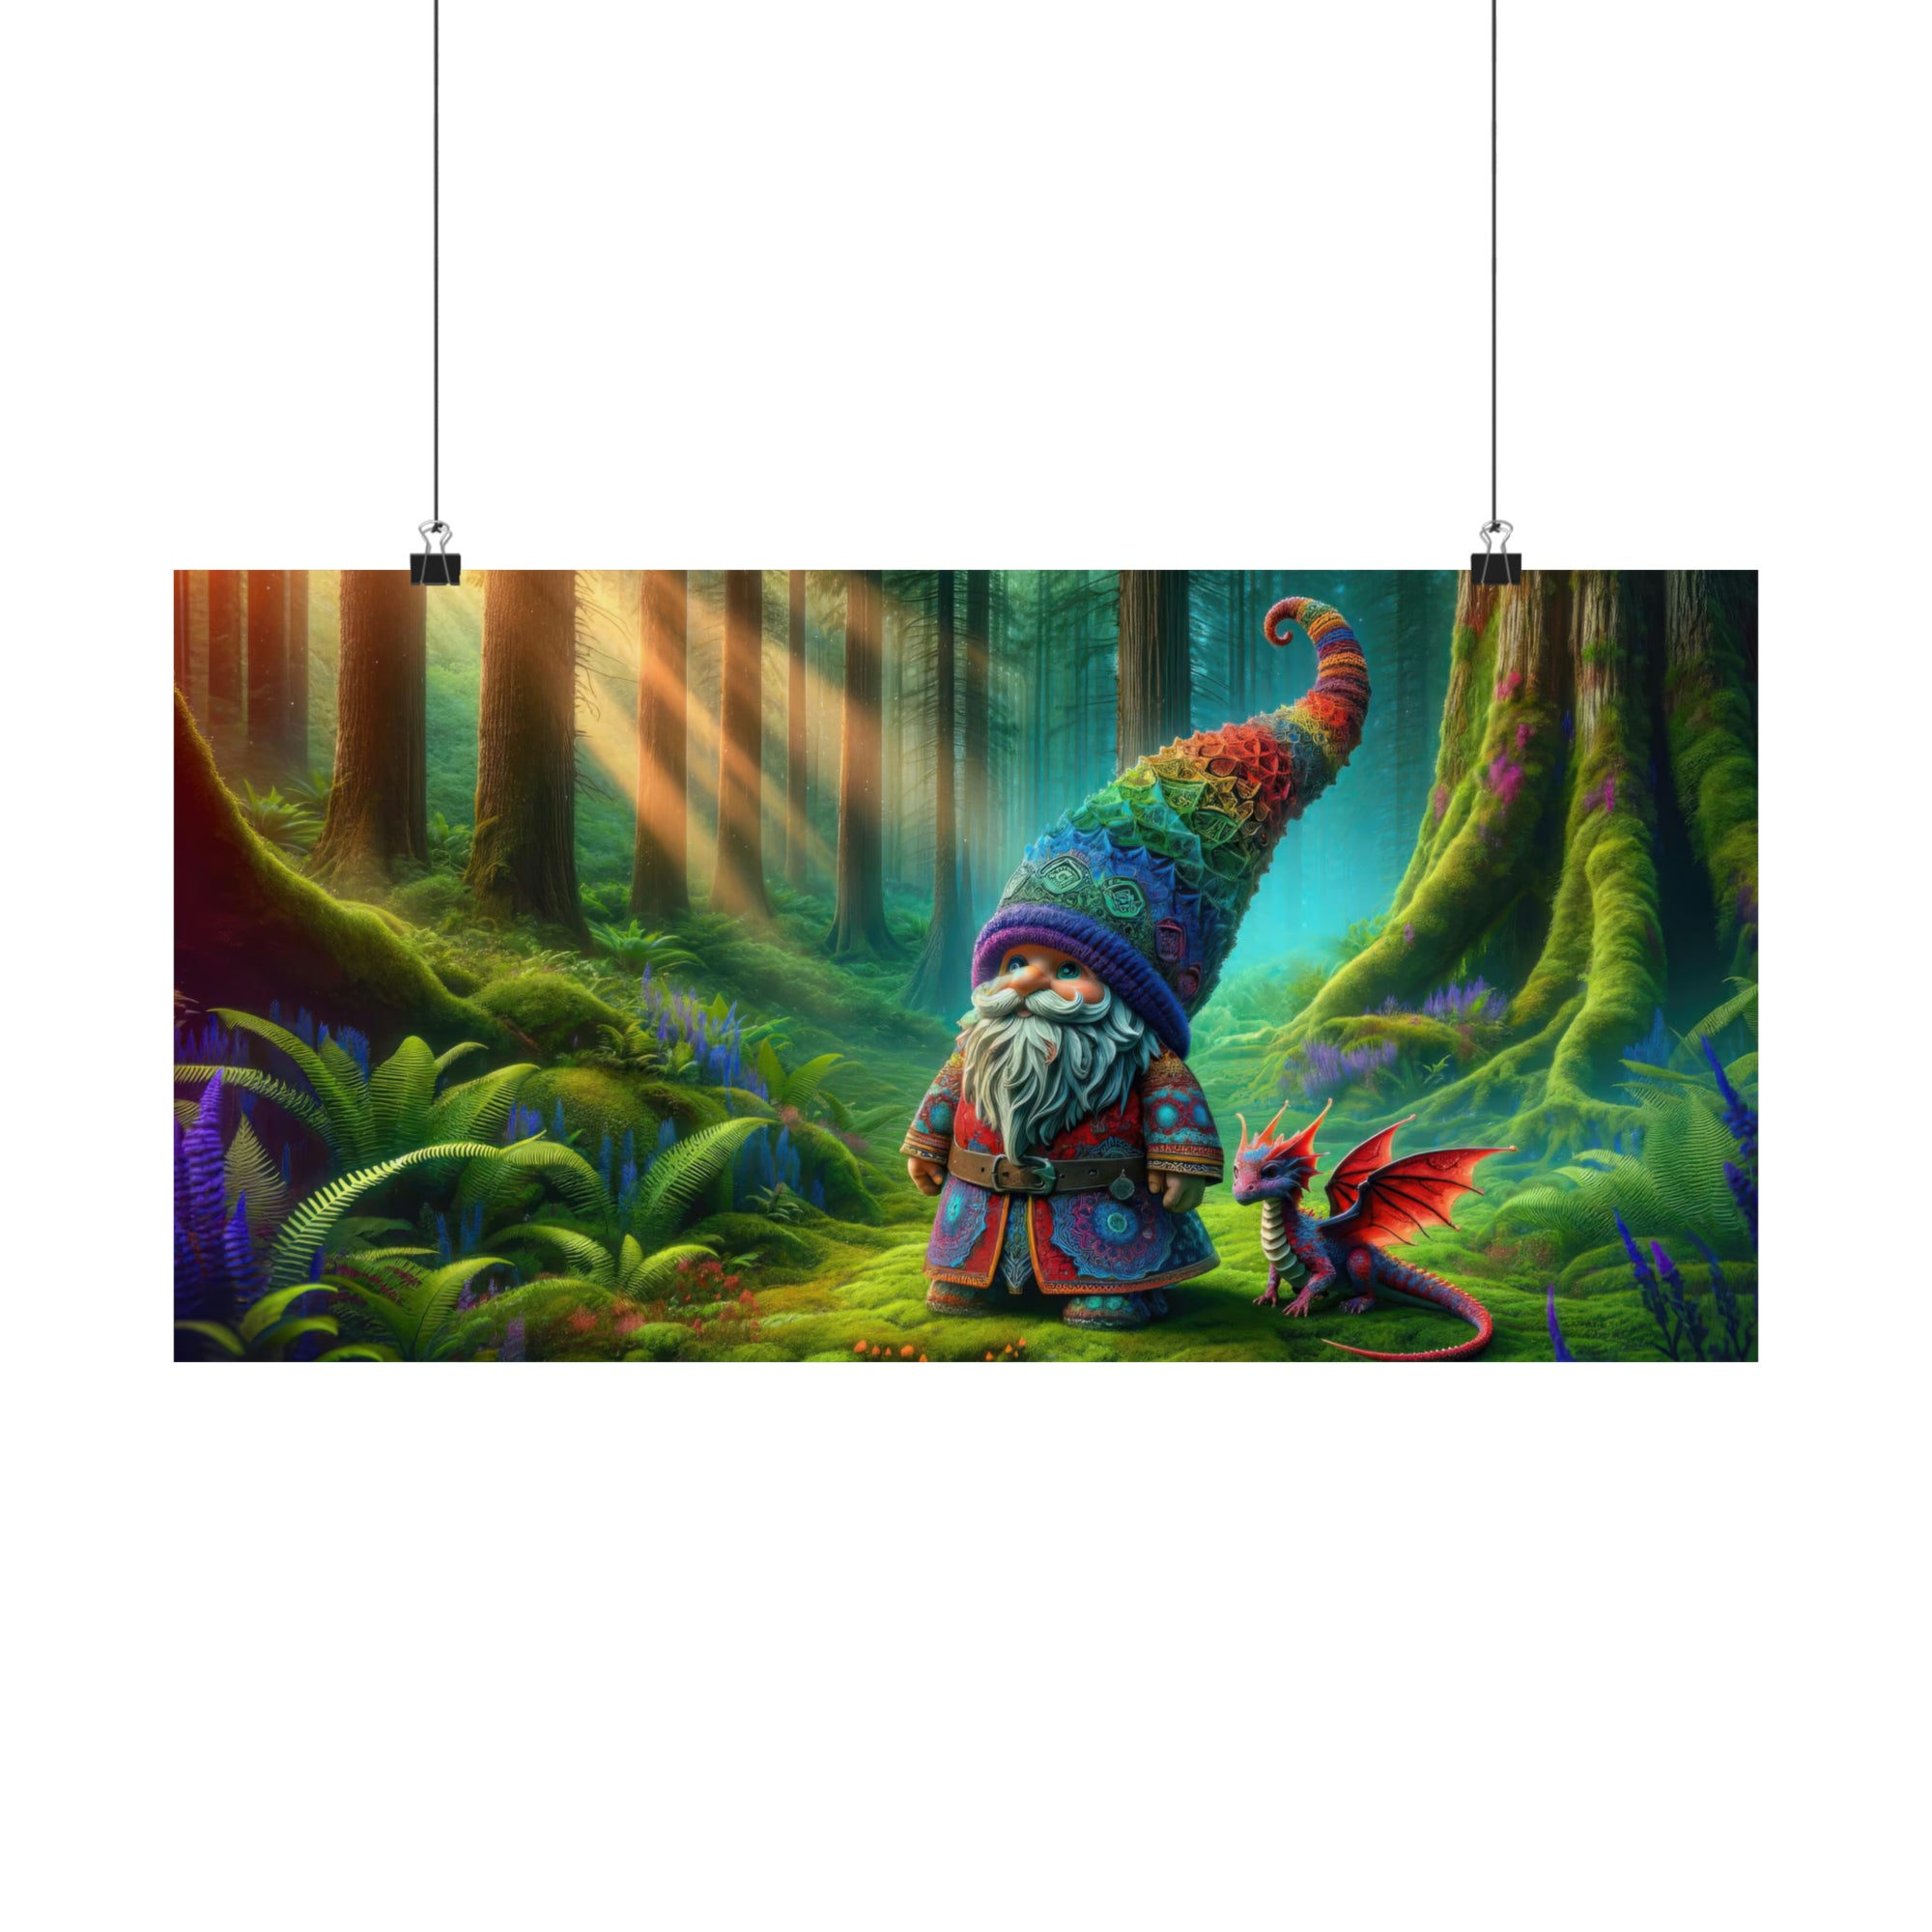 The Gnome's Mystical Companion Poster